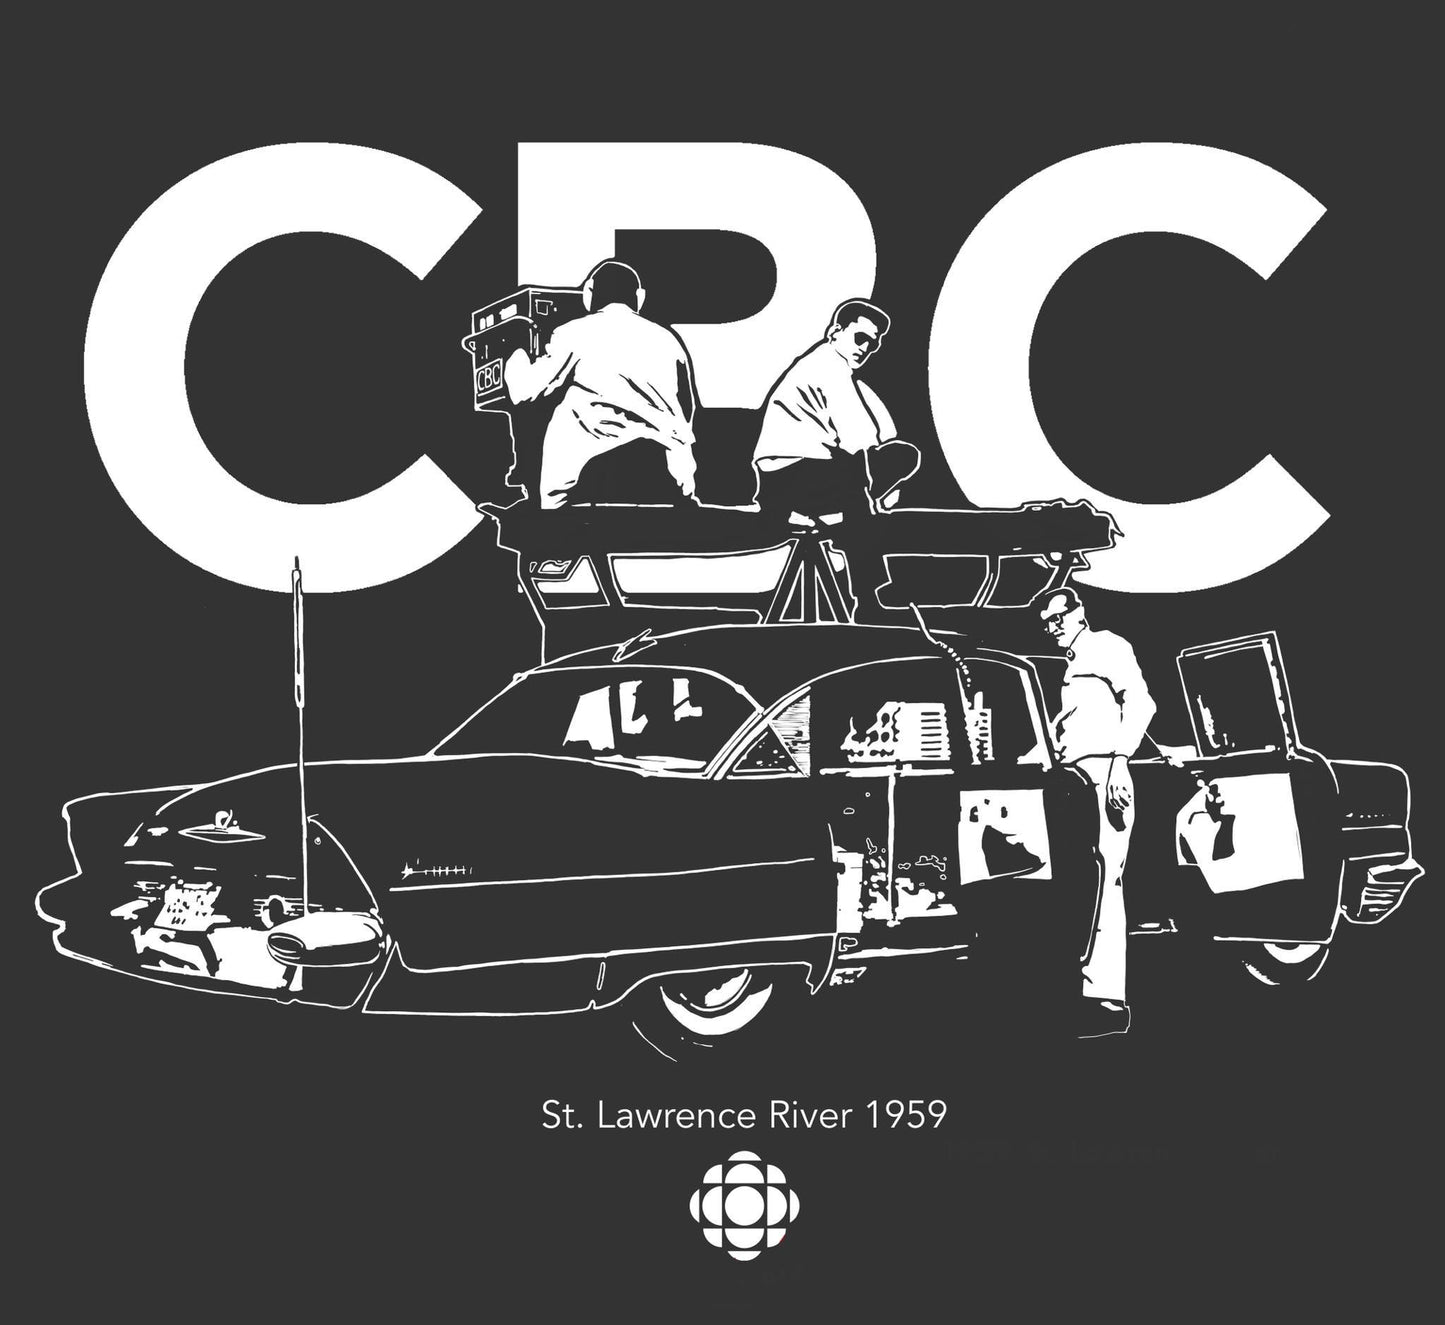 CBC Mobile Unit